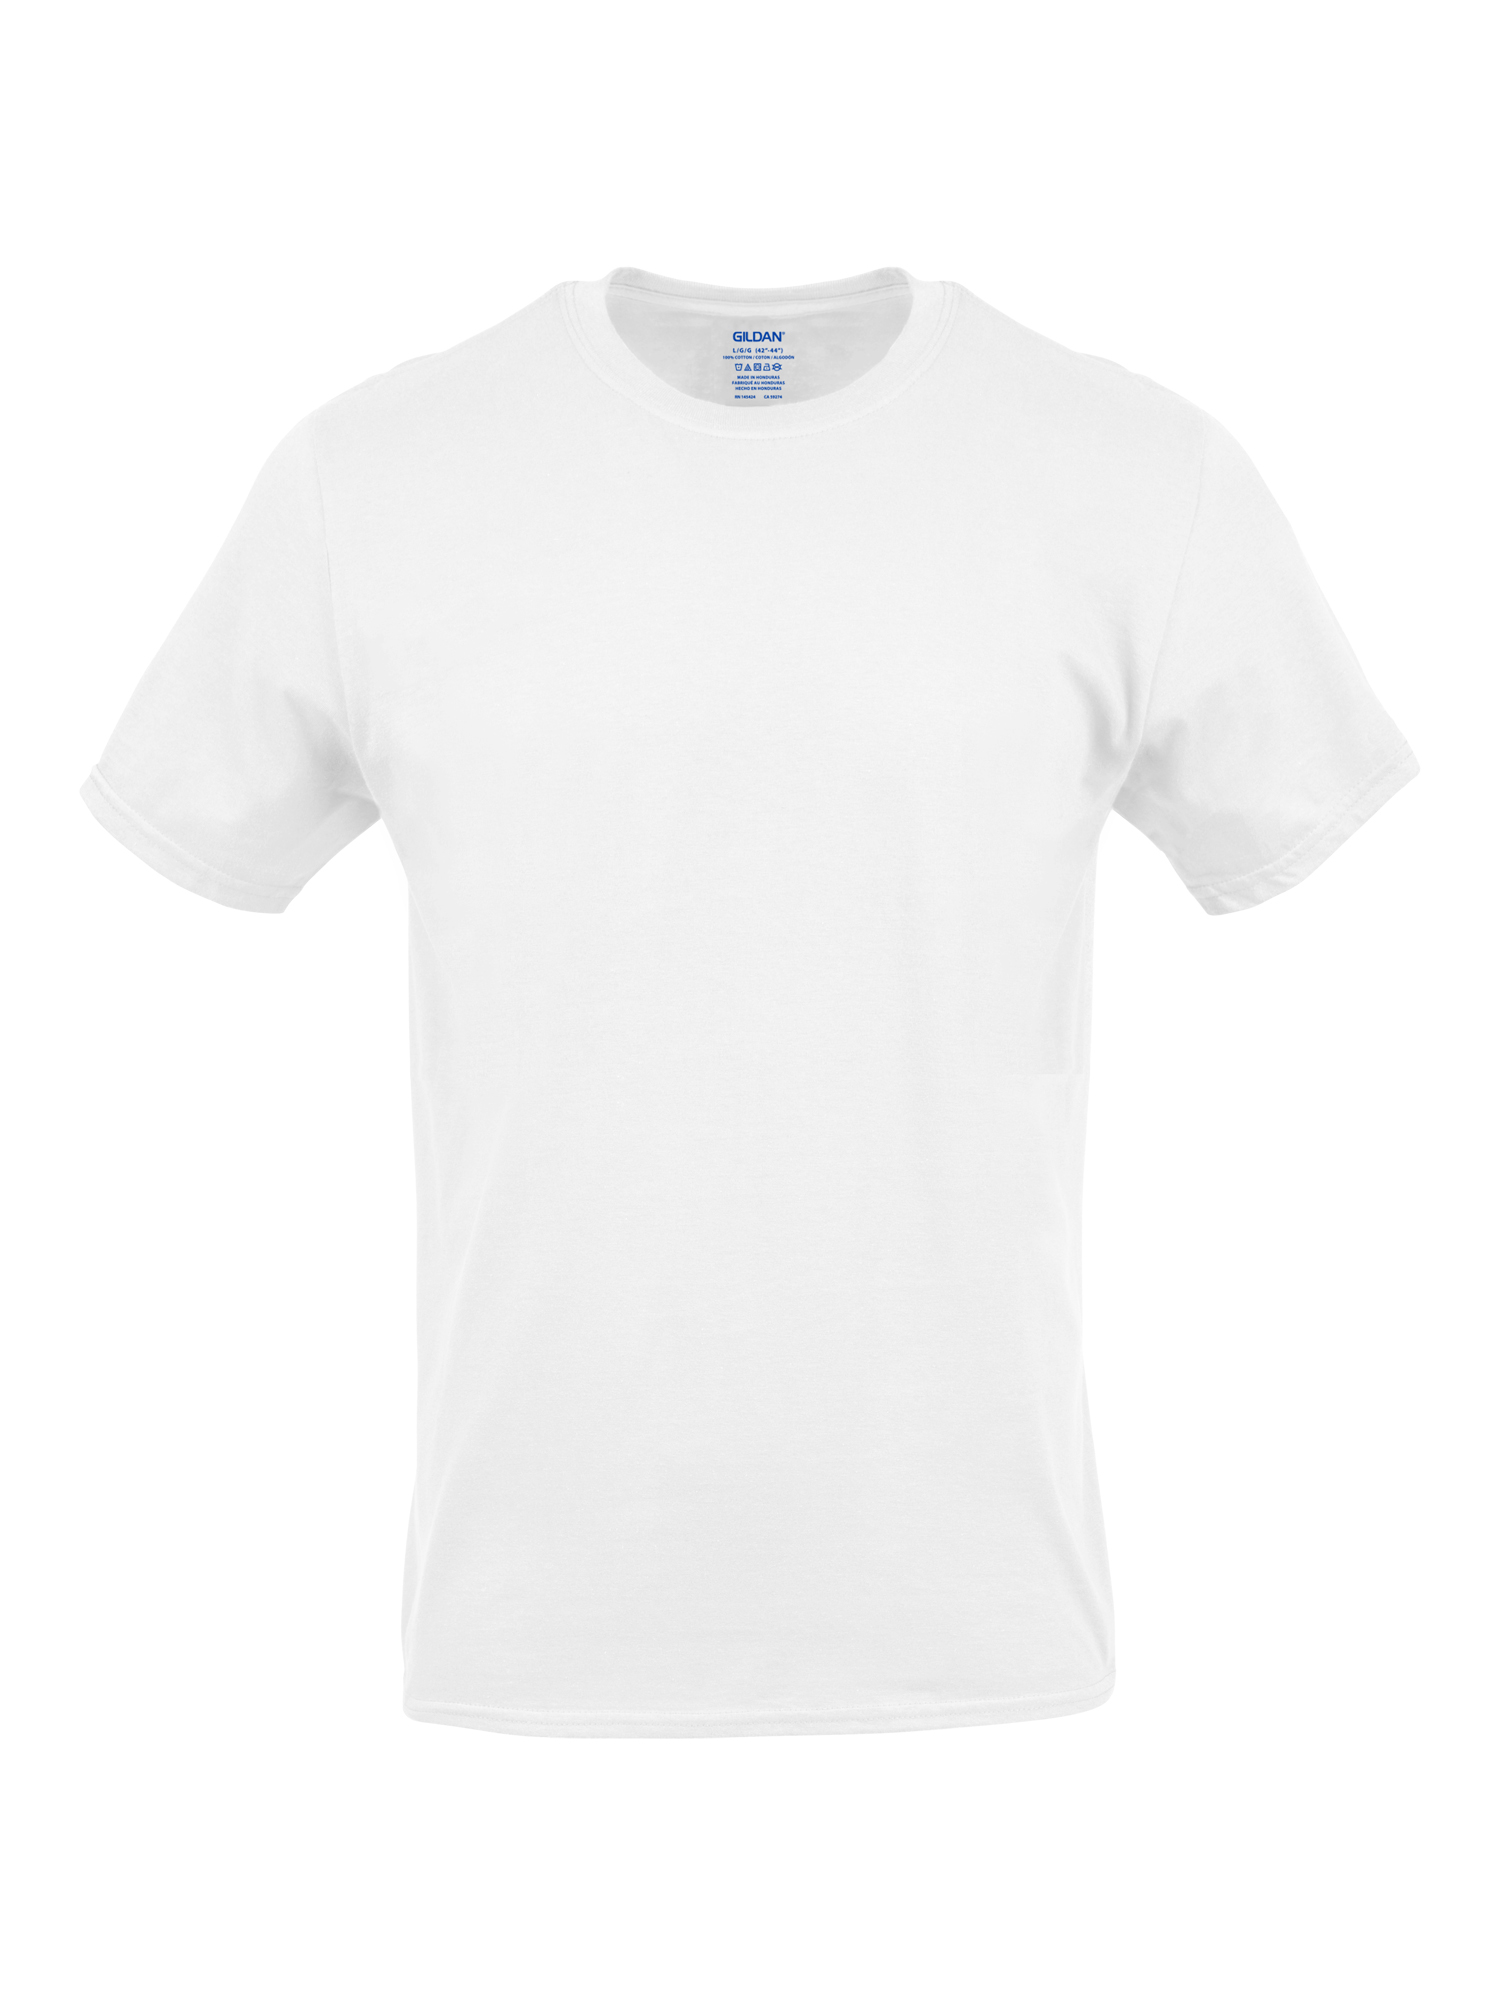 Gildan Men's Crew T-Shirts, 3-Pack - image 3 of 5